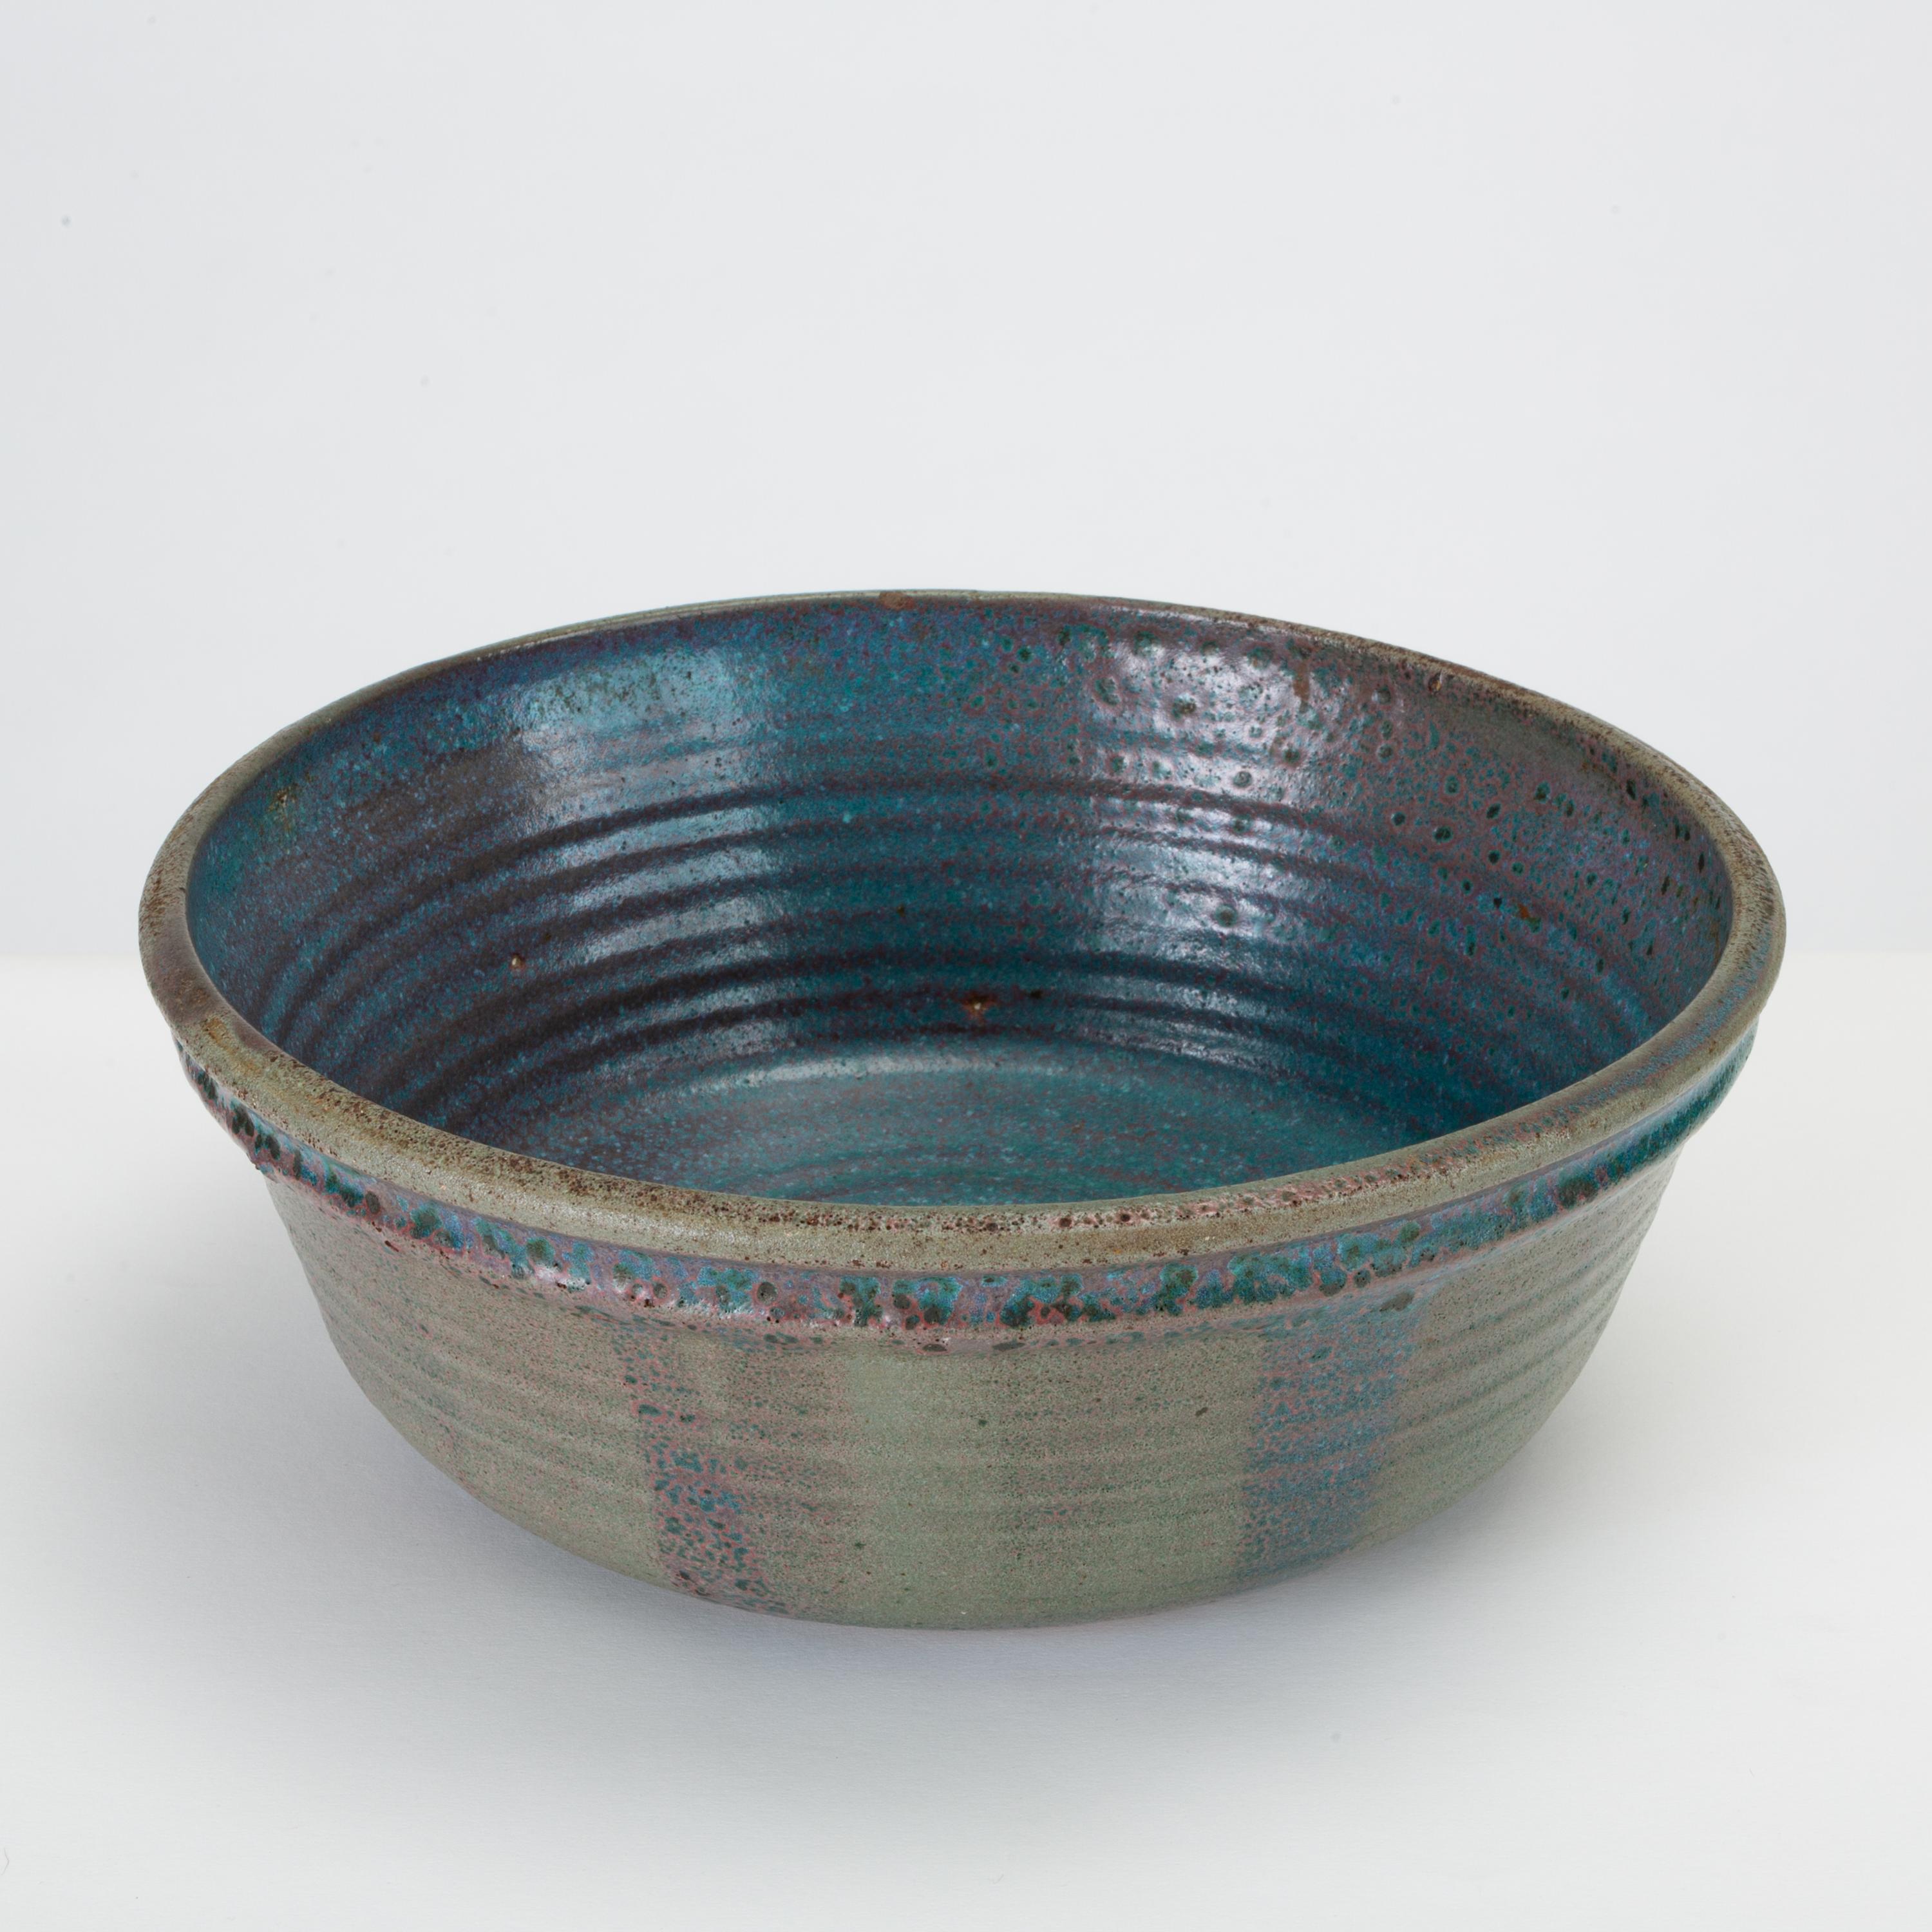 Blue Studio Pottery Serving Bowl (20. Jahrhundert)